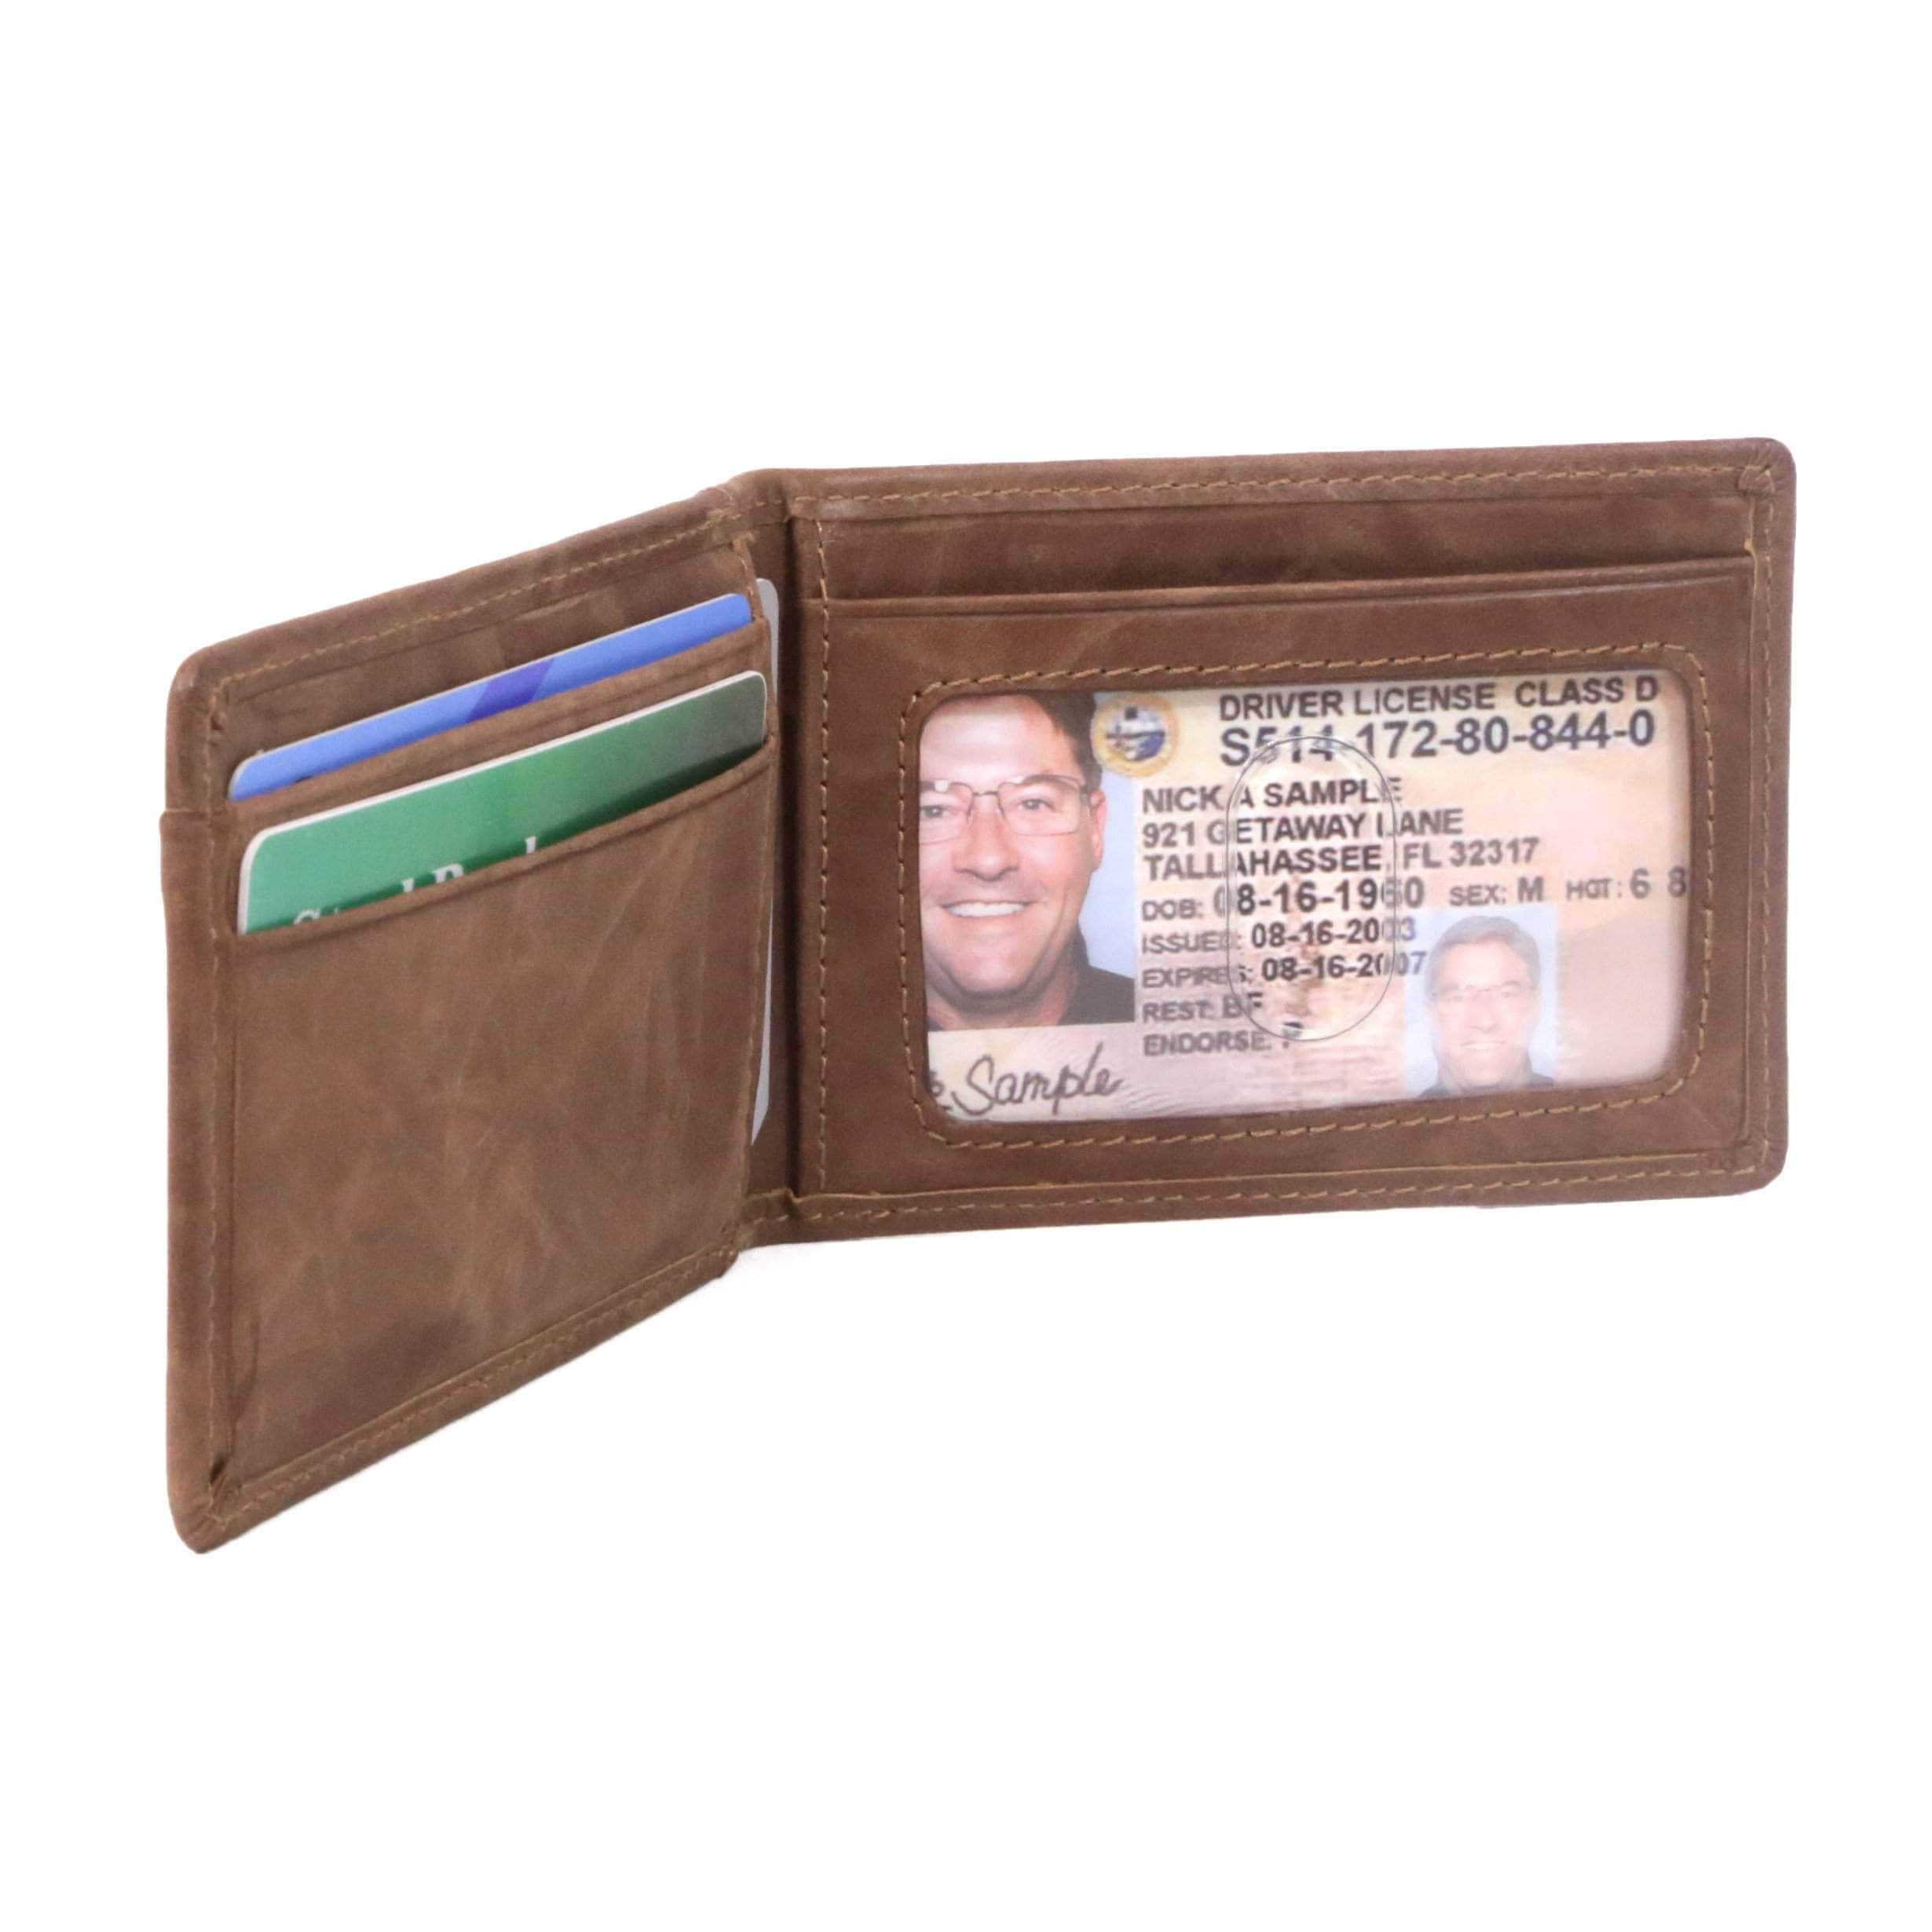 HOJ Co. Deacon ID Bifold Front Pocket Wallet | Full Grain Leather | Bifold Money